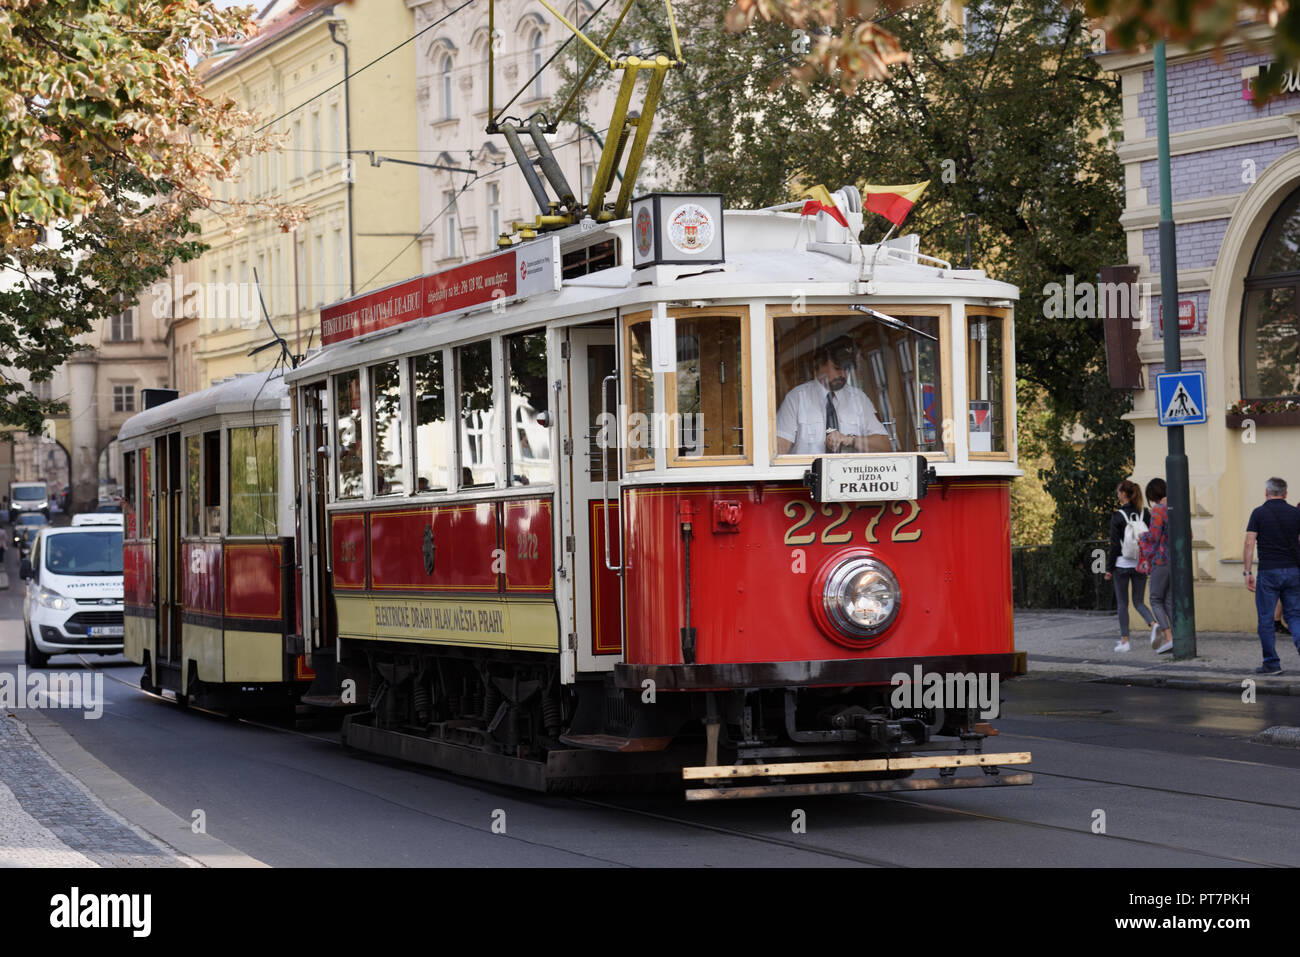 Prague, République tchèque - 15 septembre 2018 : tramway rétro sur la rue de Prague. A partir de 2017, le réseau de tramway de Prague est le troisième plus grand au monde Banque D'Images